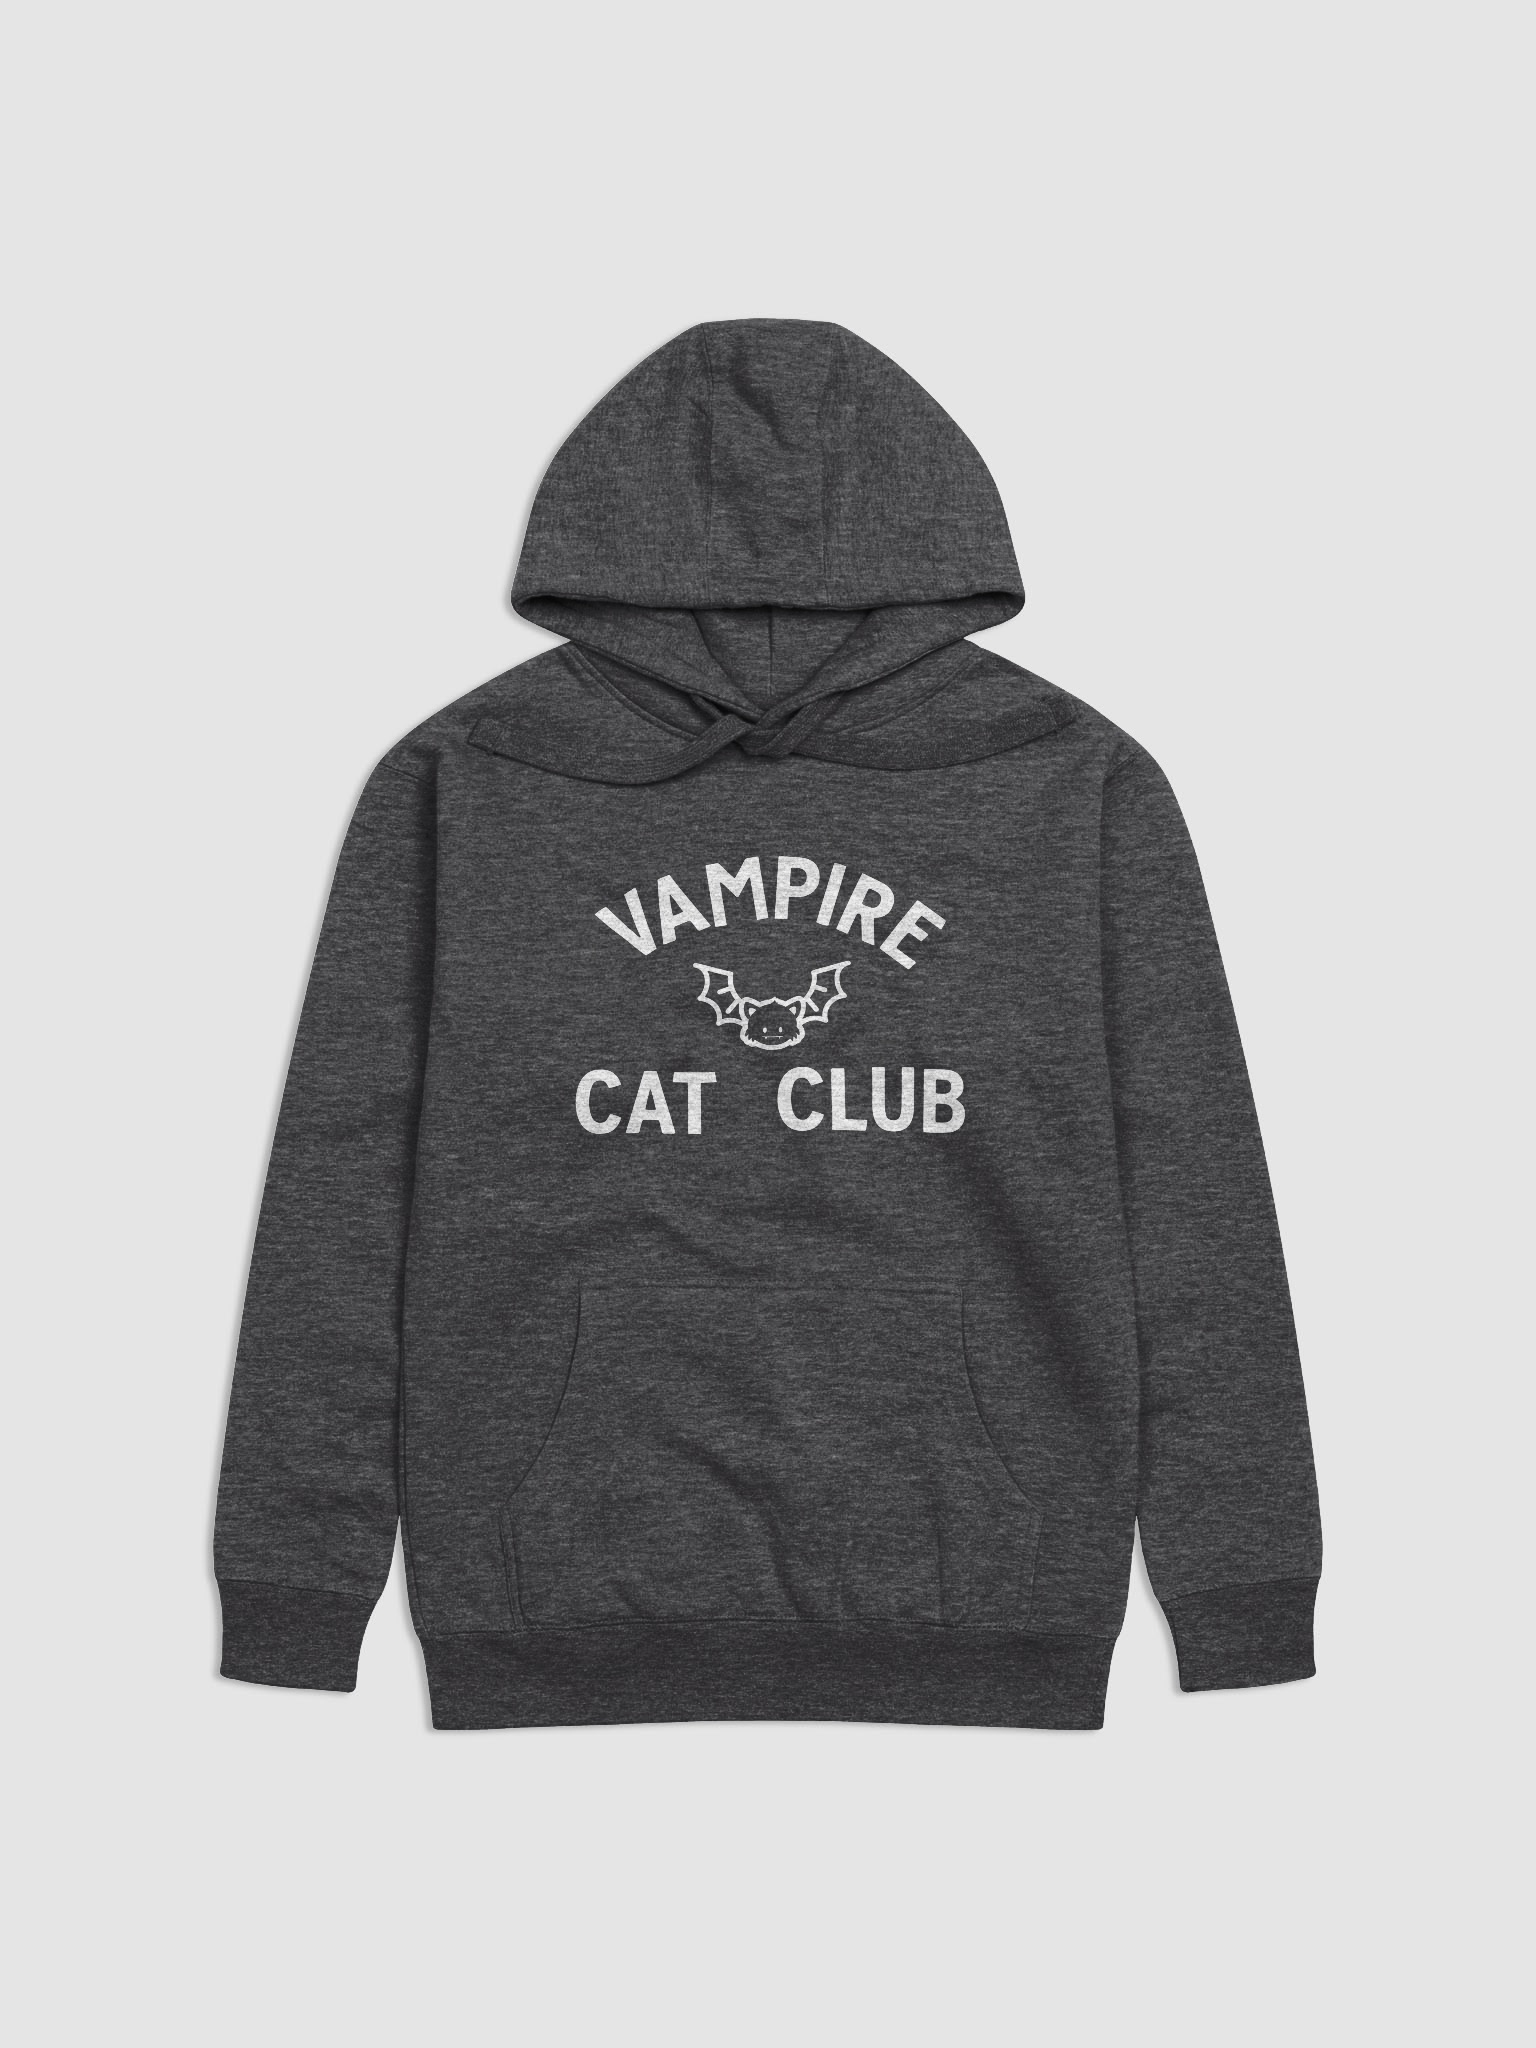 Vampire Cat Club